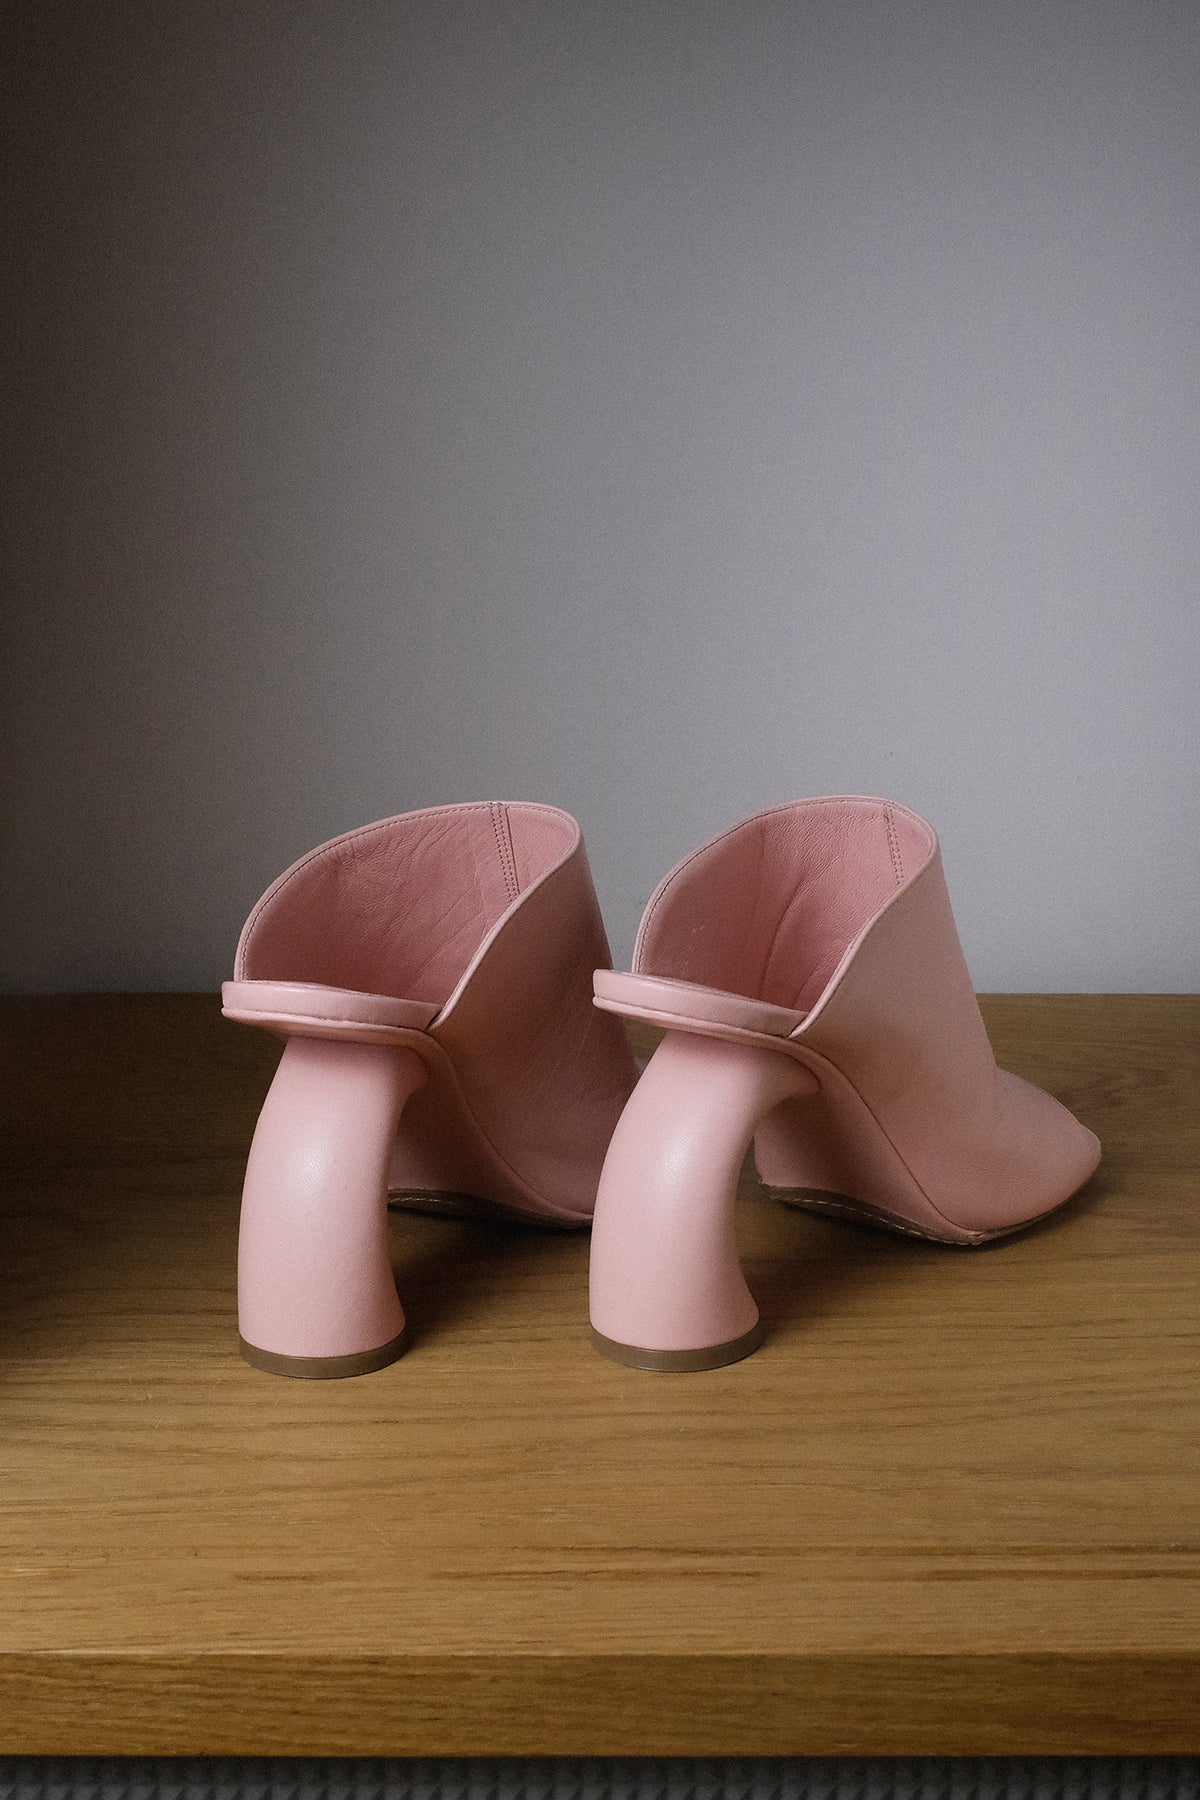 Dries van Noten — Sandals / Pink